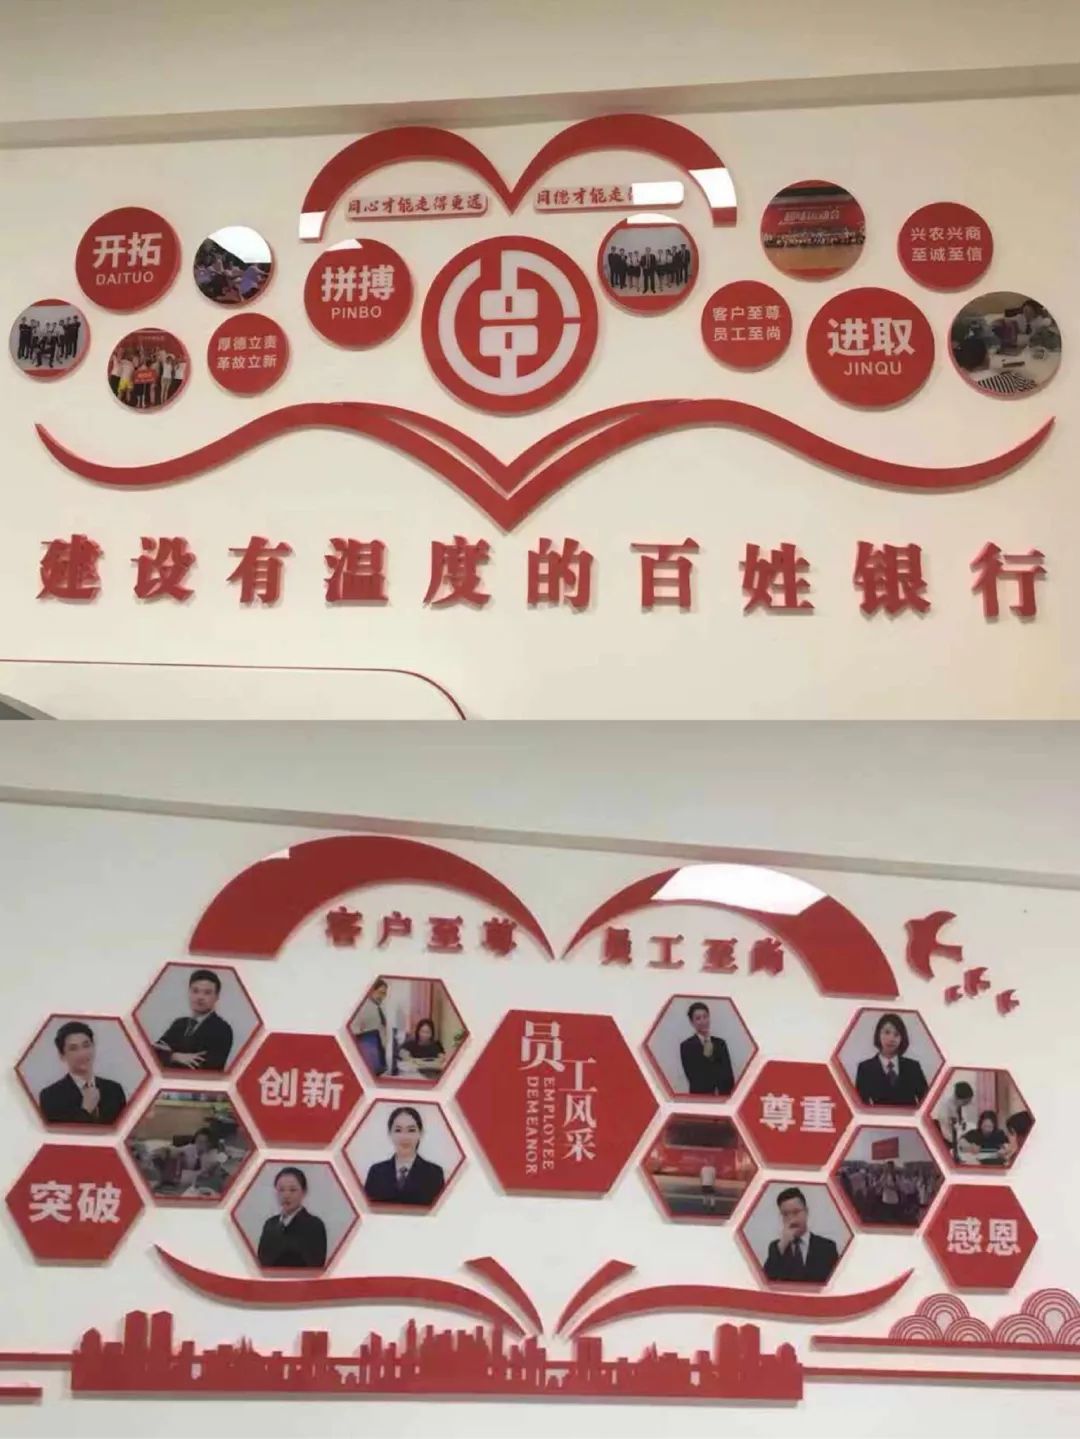 郴州农商银行白露塘支行: 打造温暖文化墙,凝聚团队合力